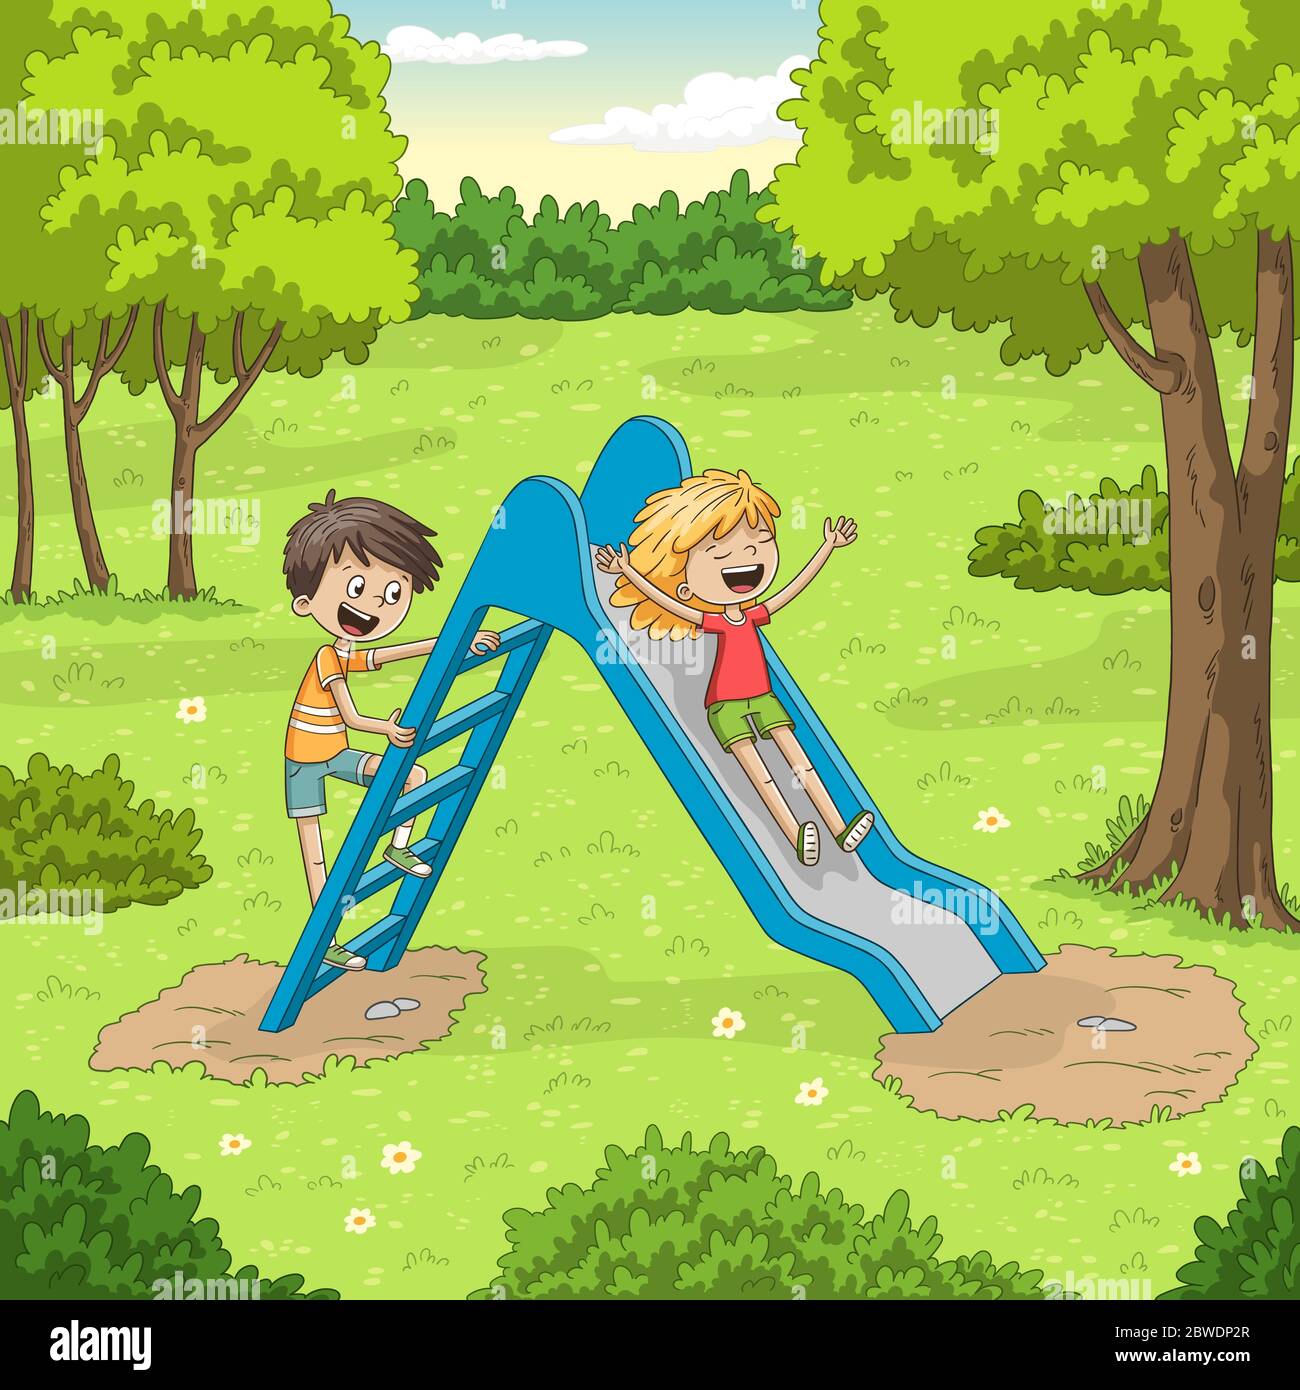 Zwei Kinder spielen im Garten. Vektorgrafik mit separaten Ebenen. Stock Vektor